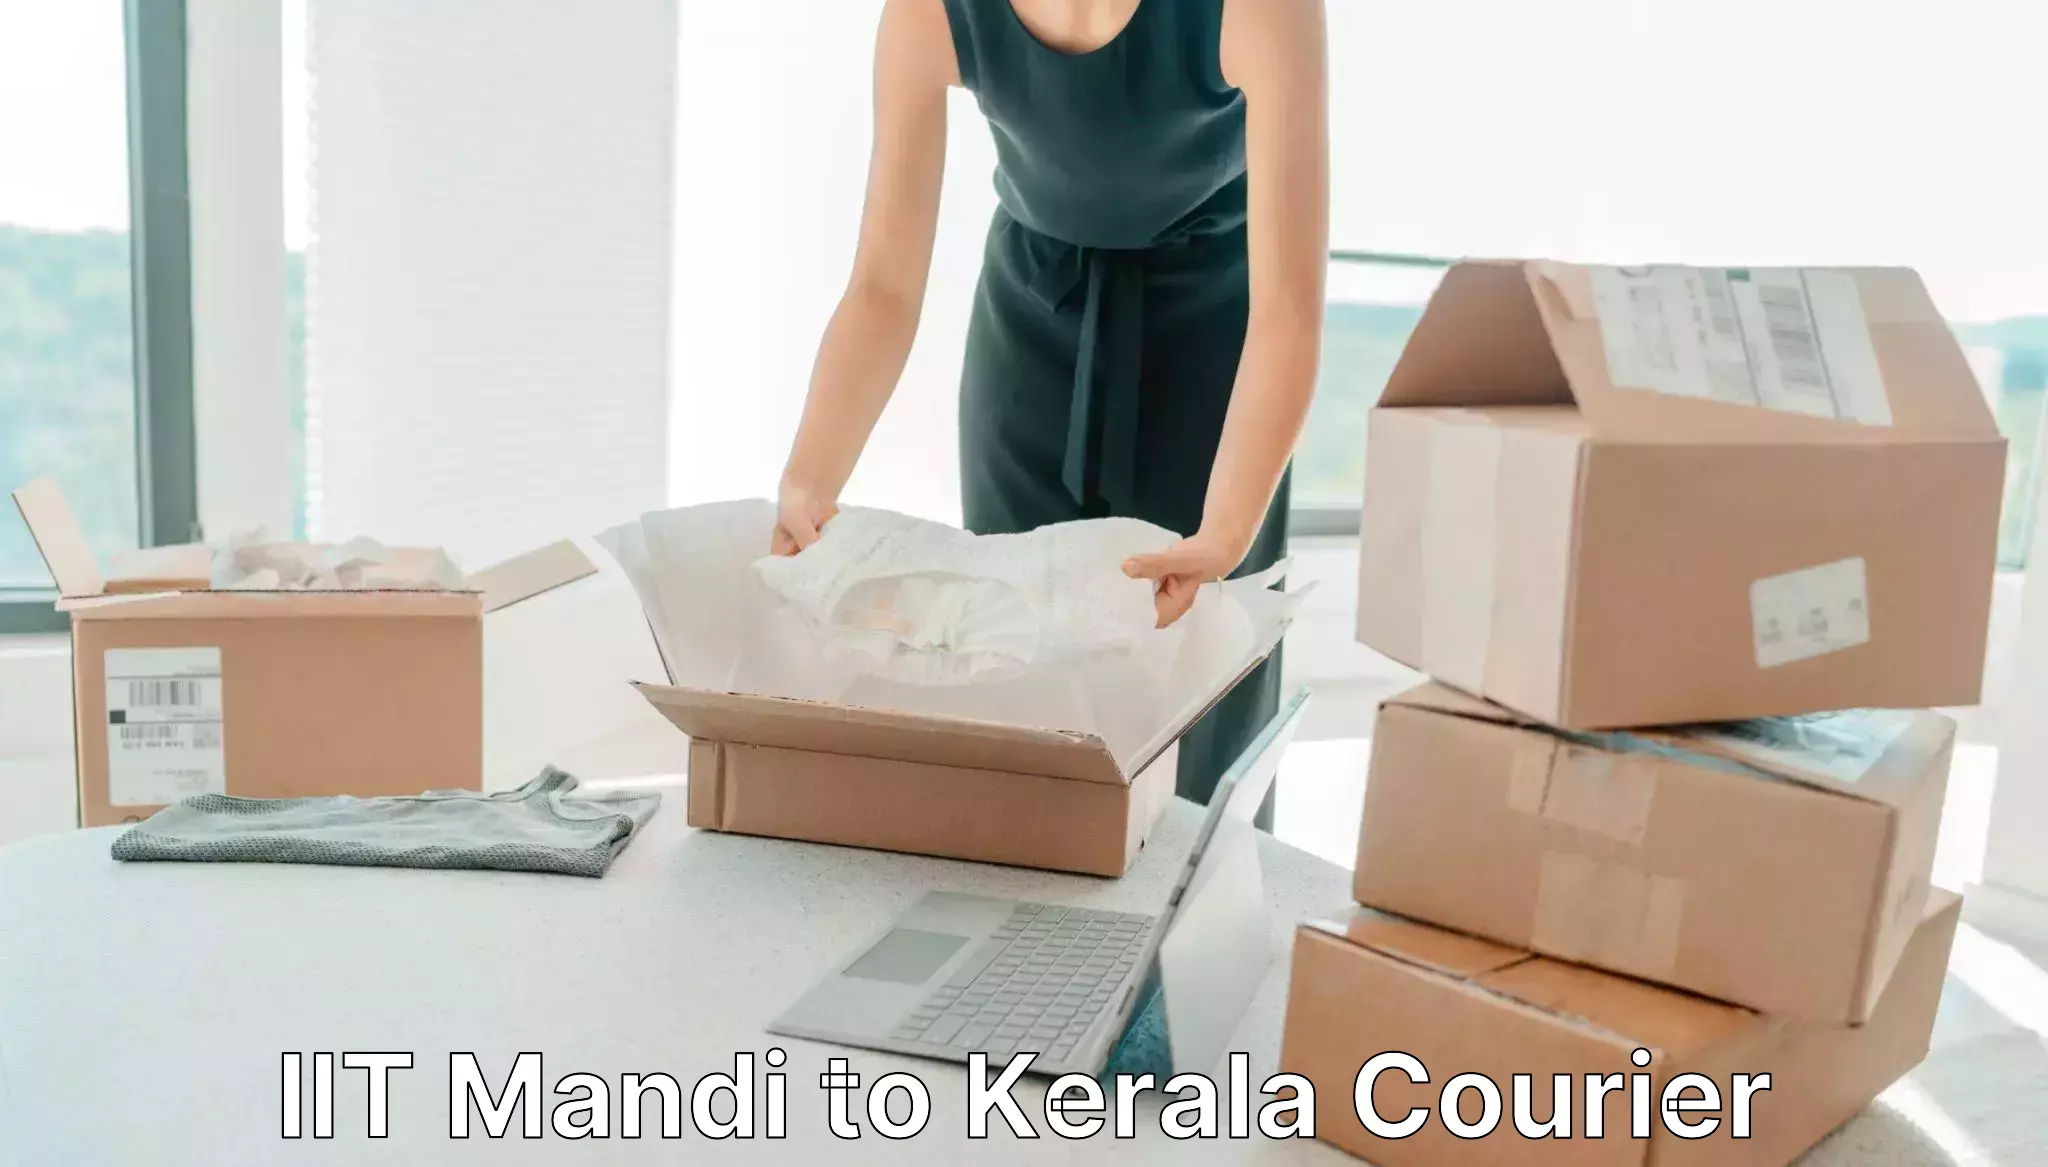 International courier rates in IIT Mandi to Kanhangad